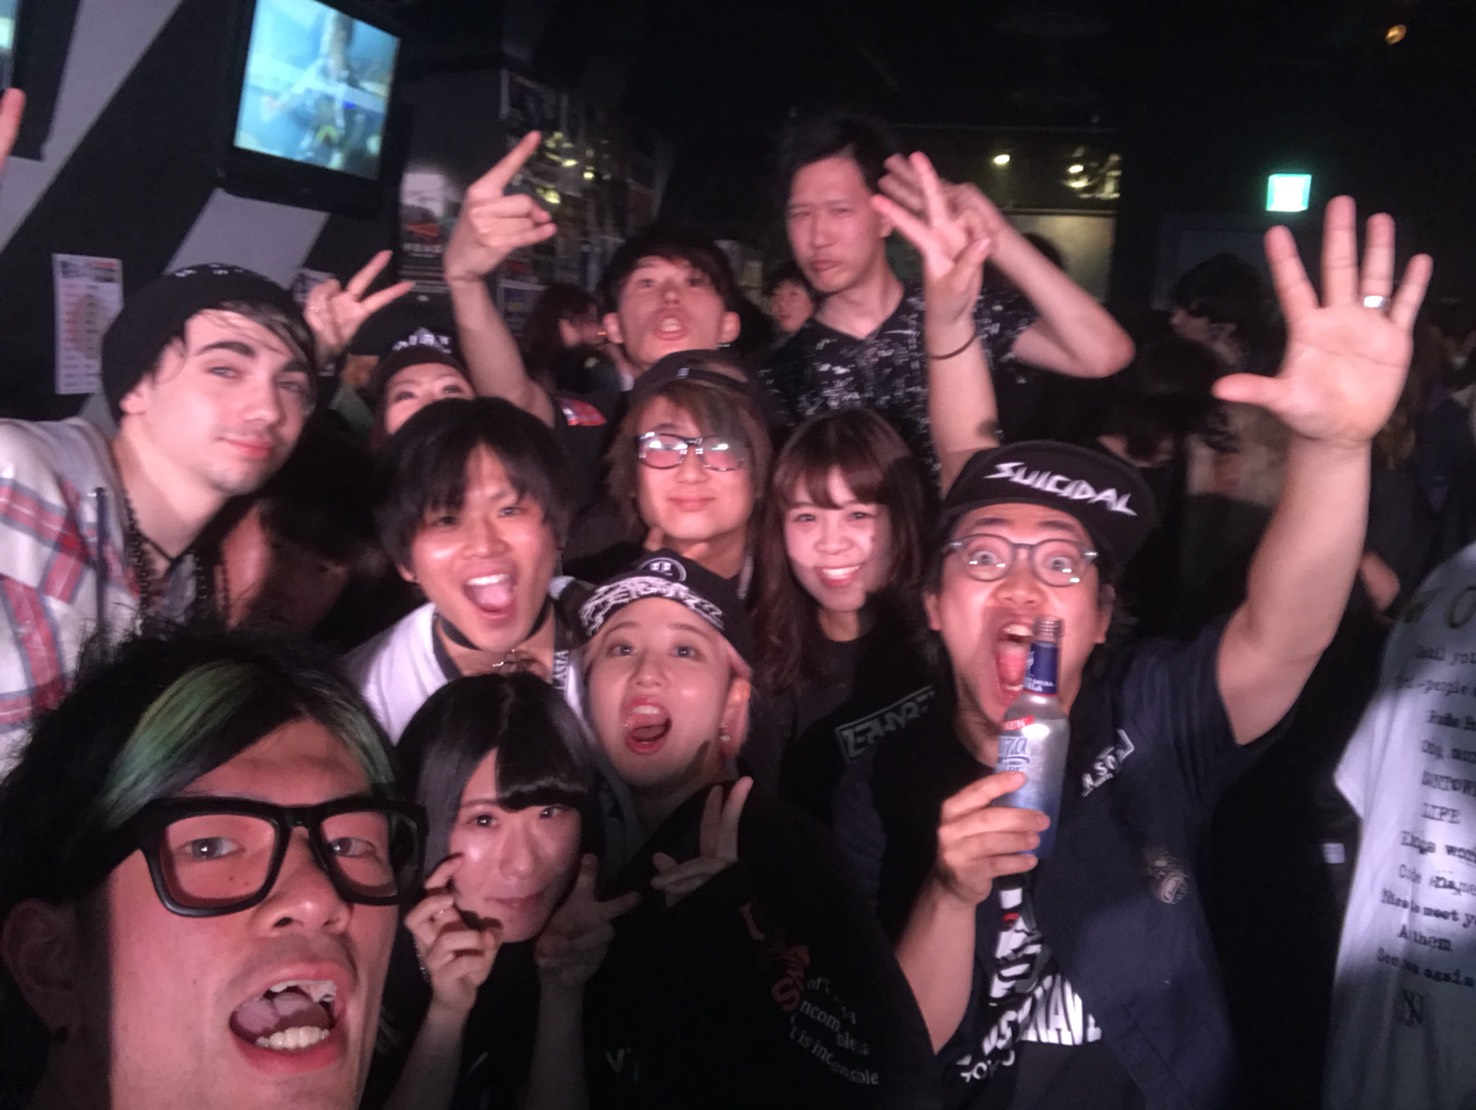 https://bar-rockaholic.jp/shibuya/blog/BFE81B0E-EA4D-4368-BF02-A2F8A05D24E5.jpeg